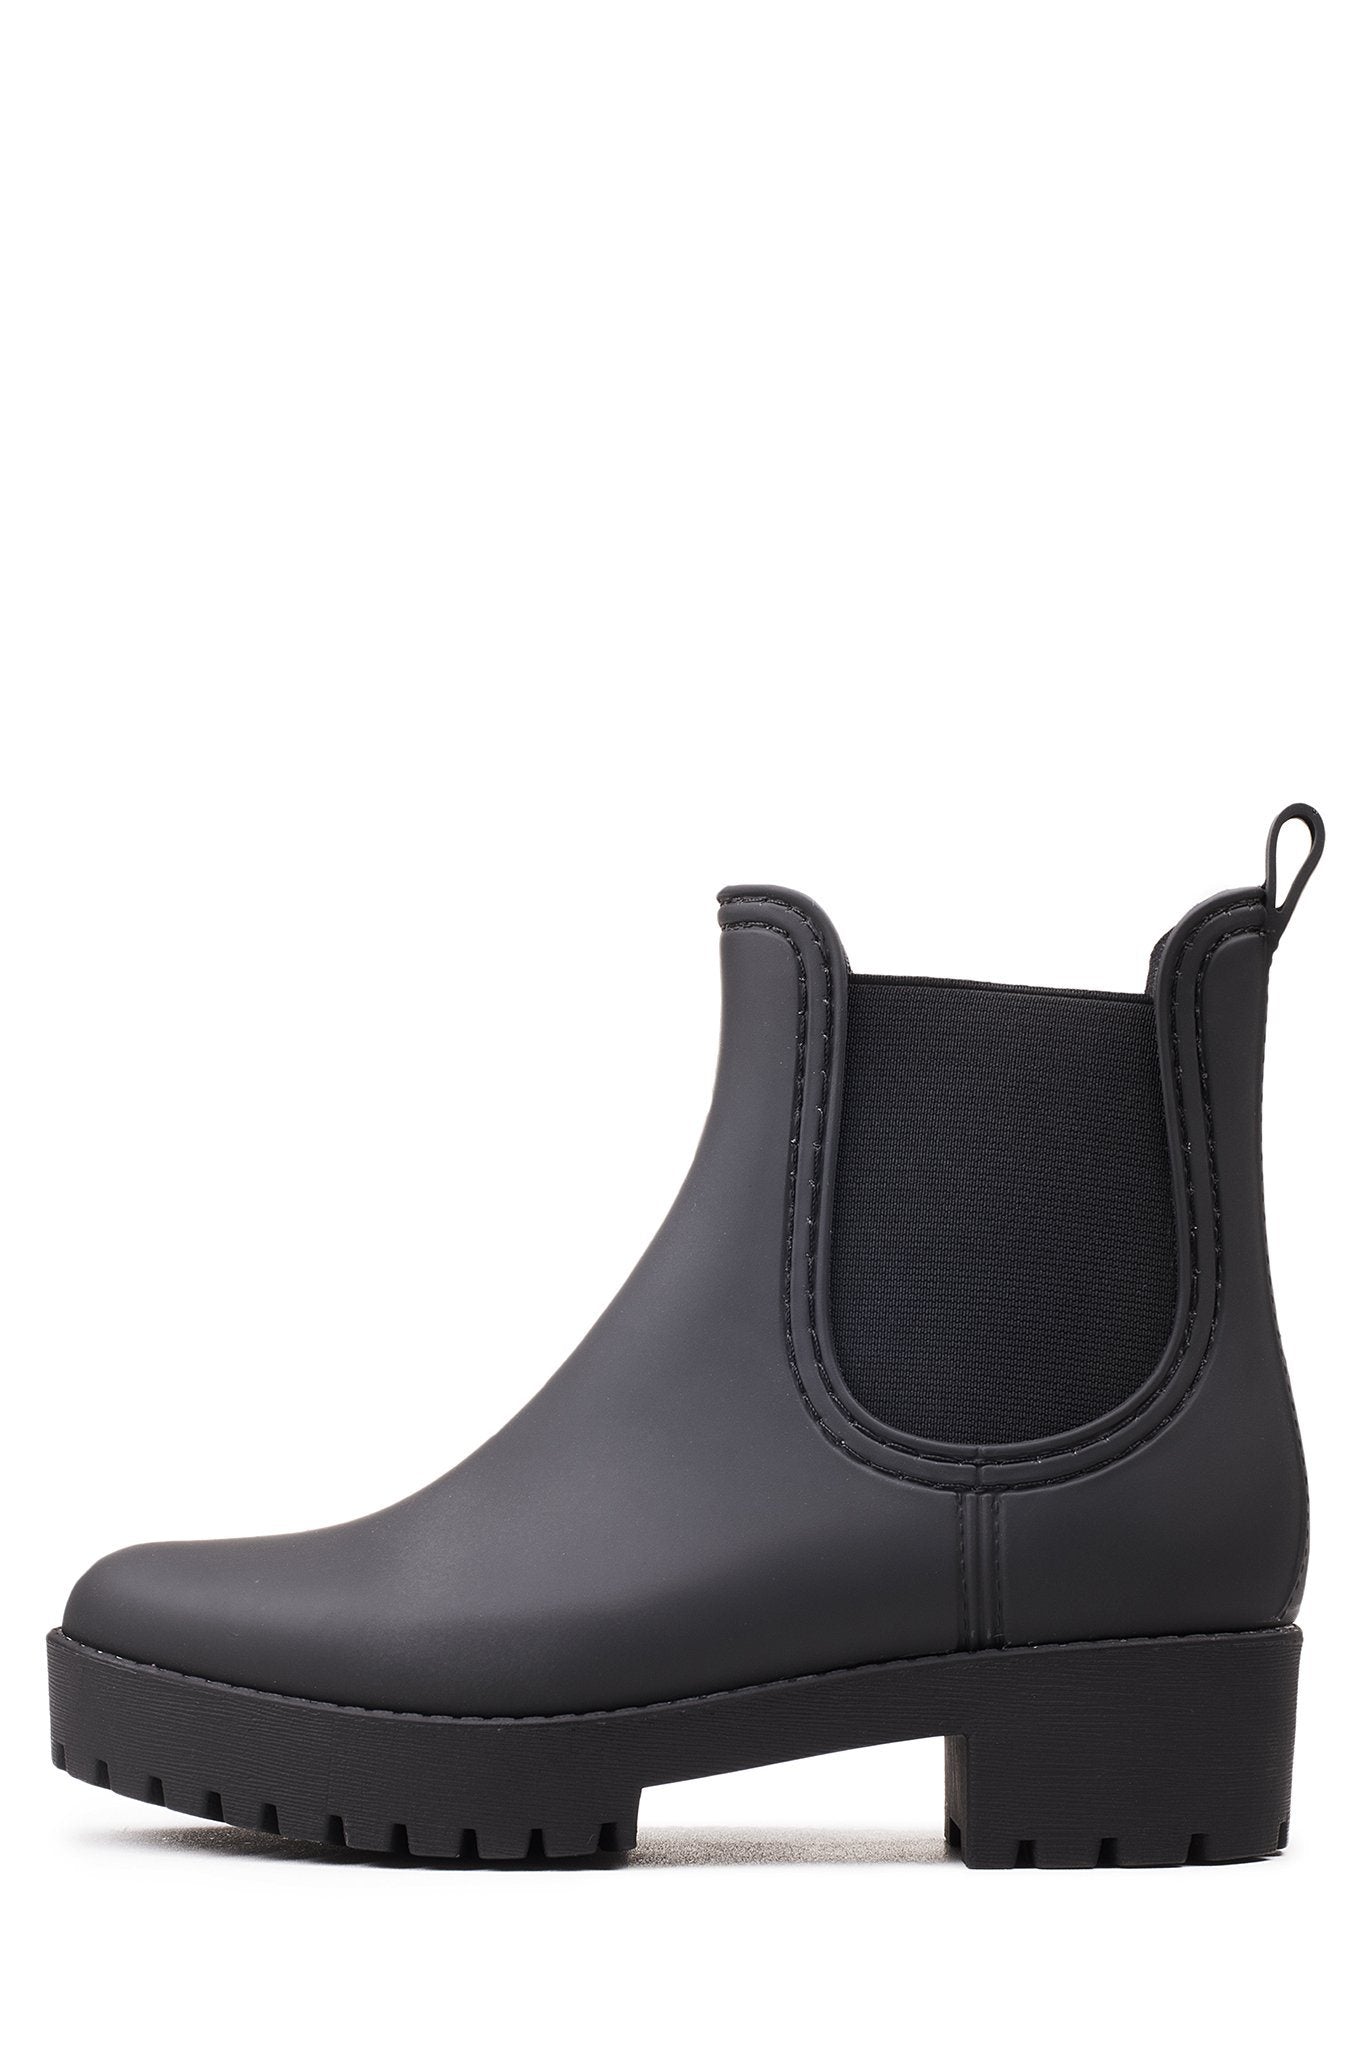 matte black chelsea rain boots